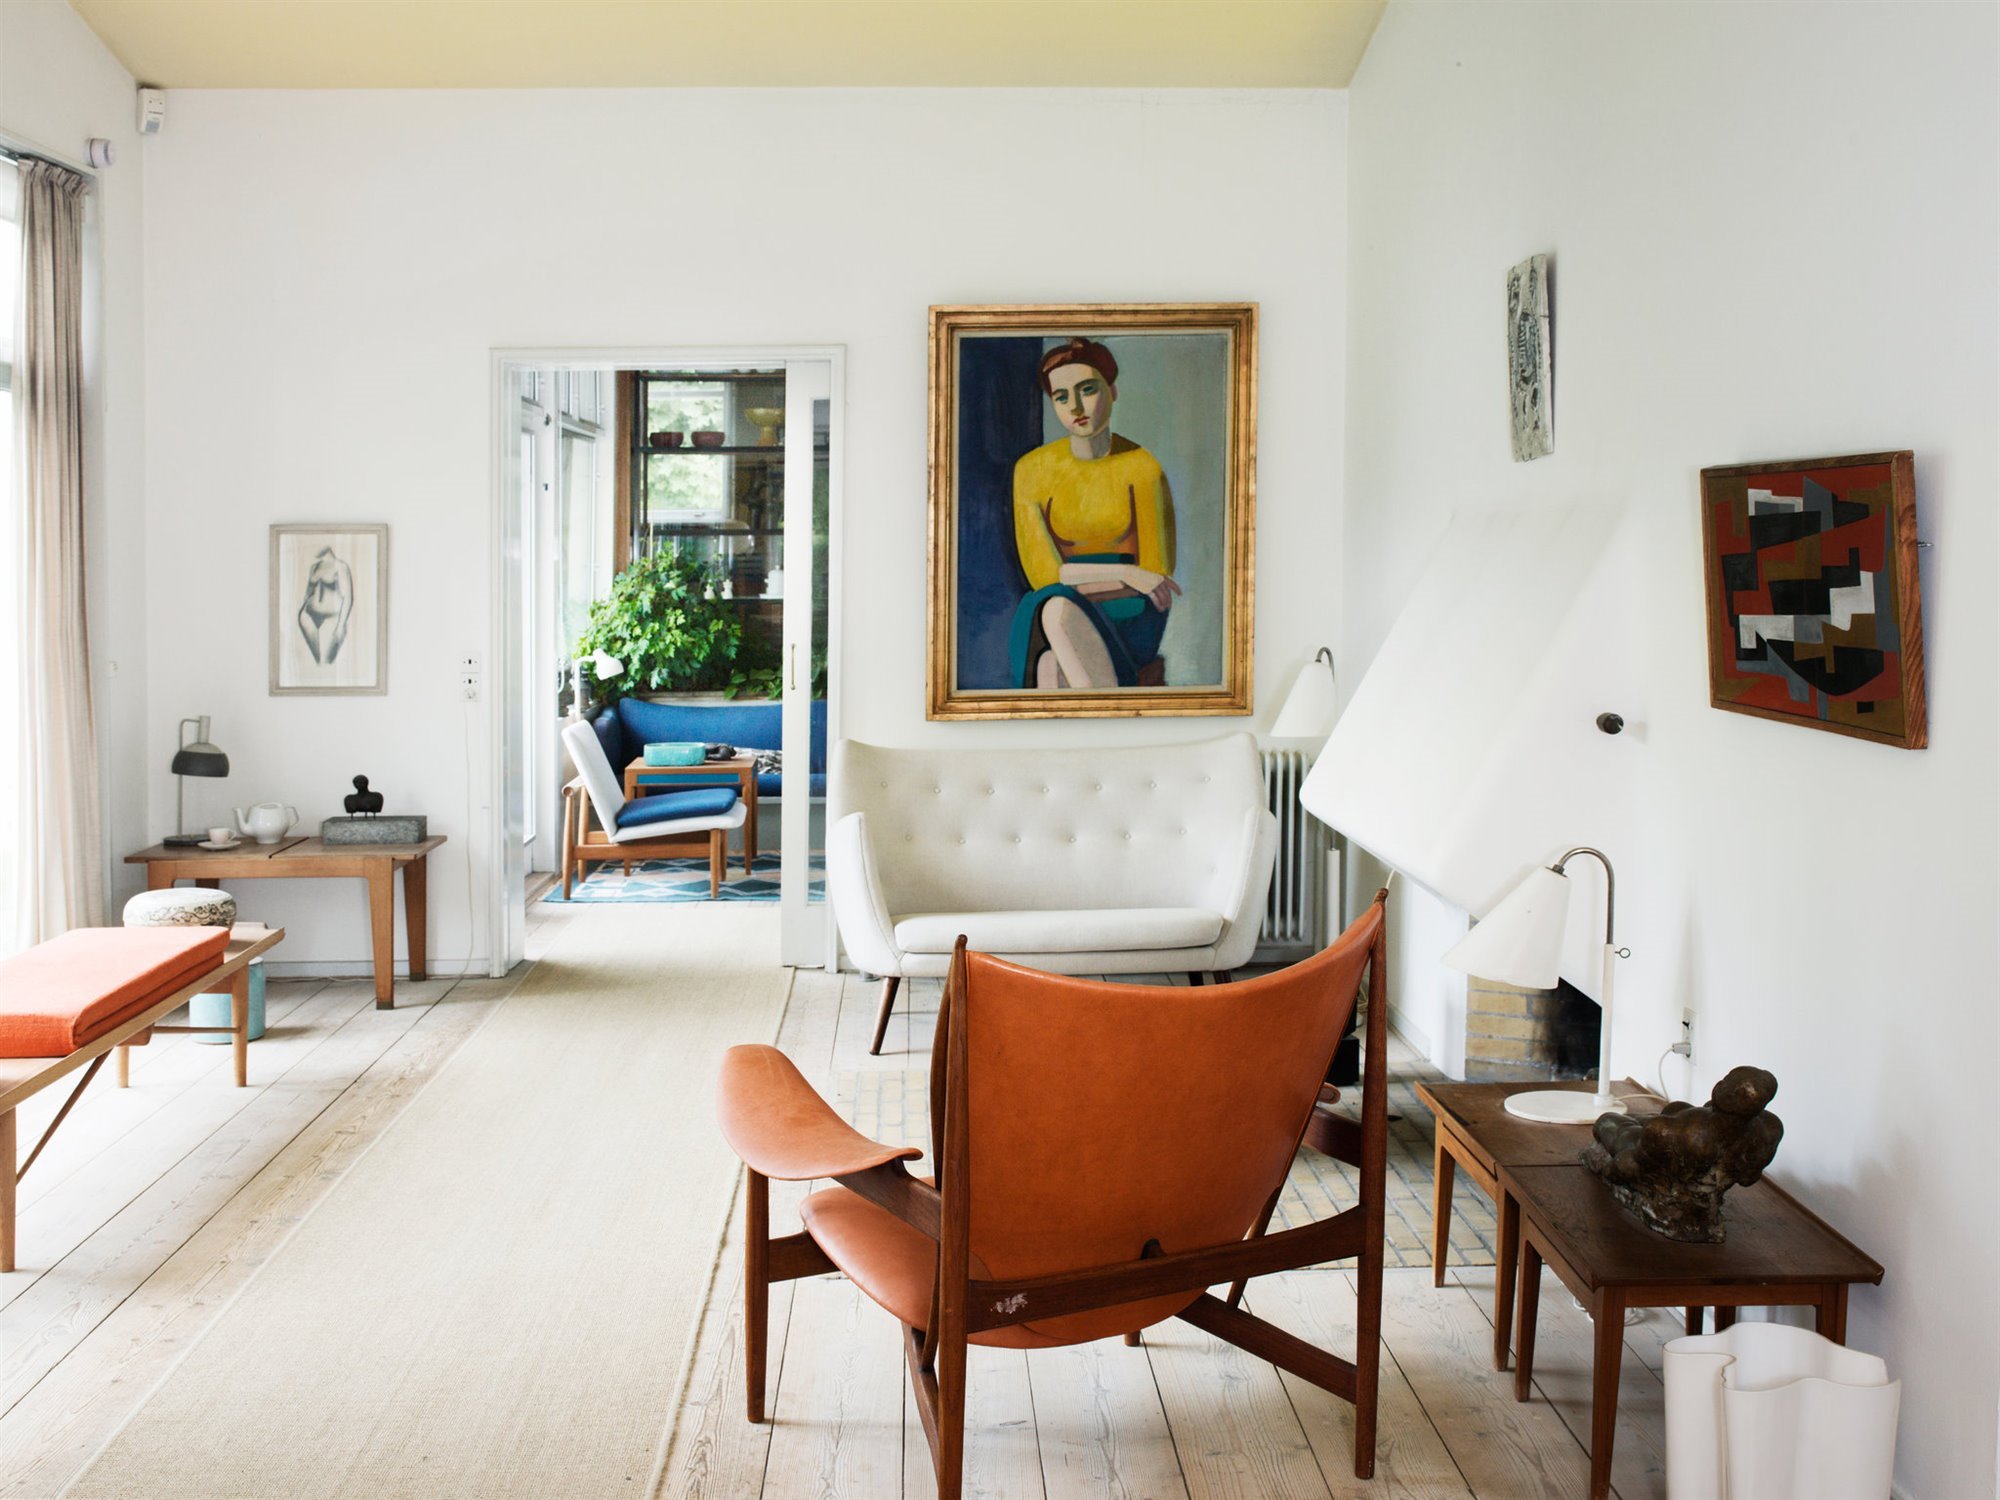 Salon con cuadros con marcos dorados y de madera